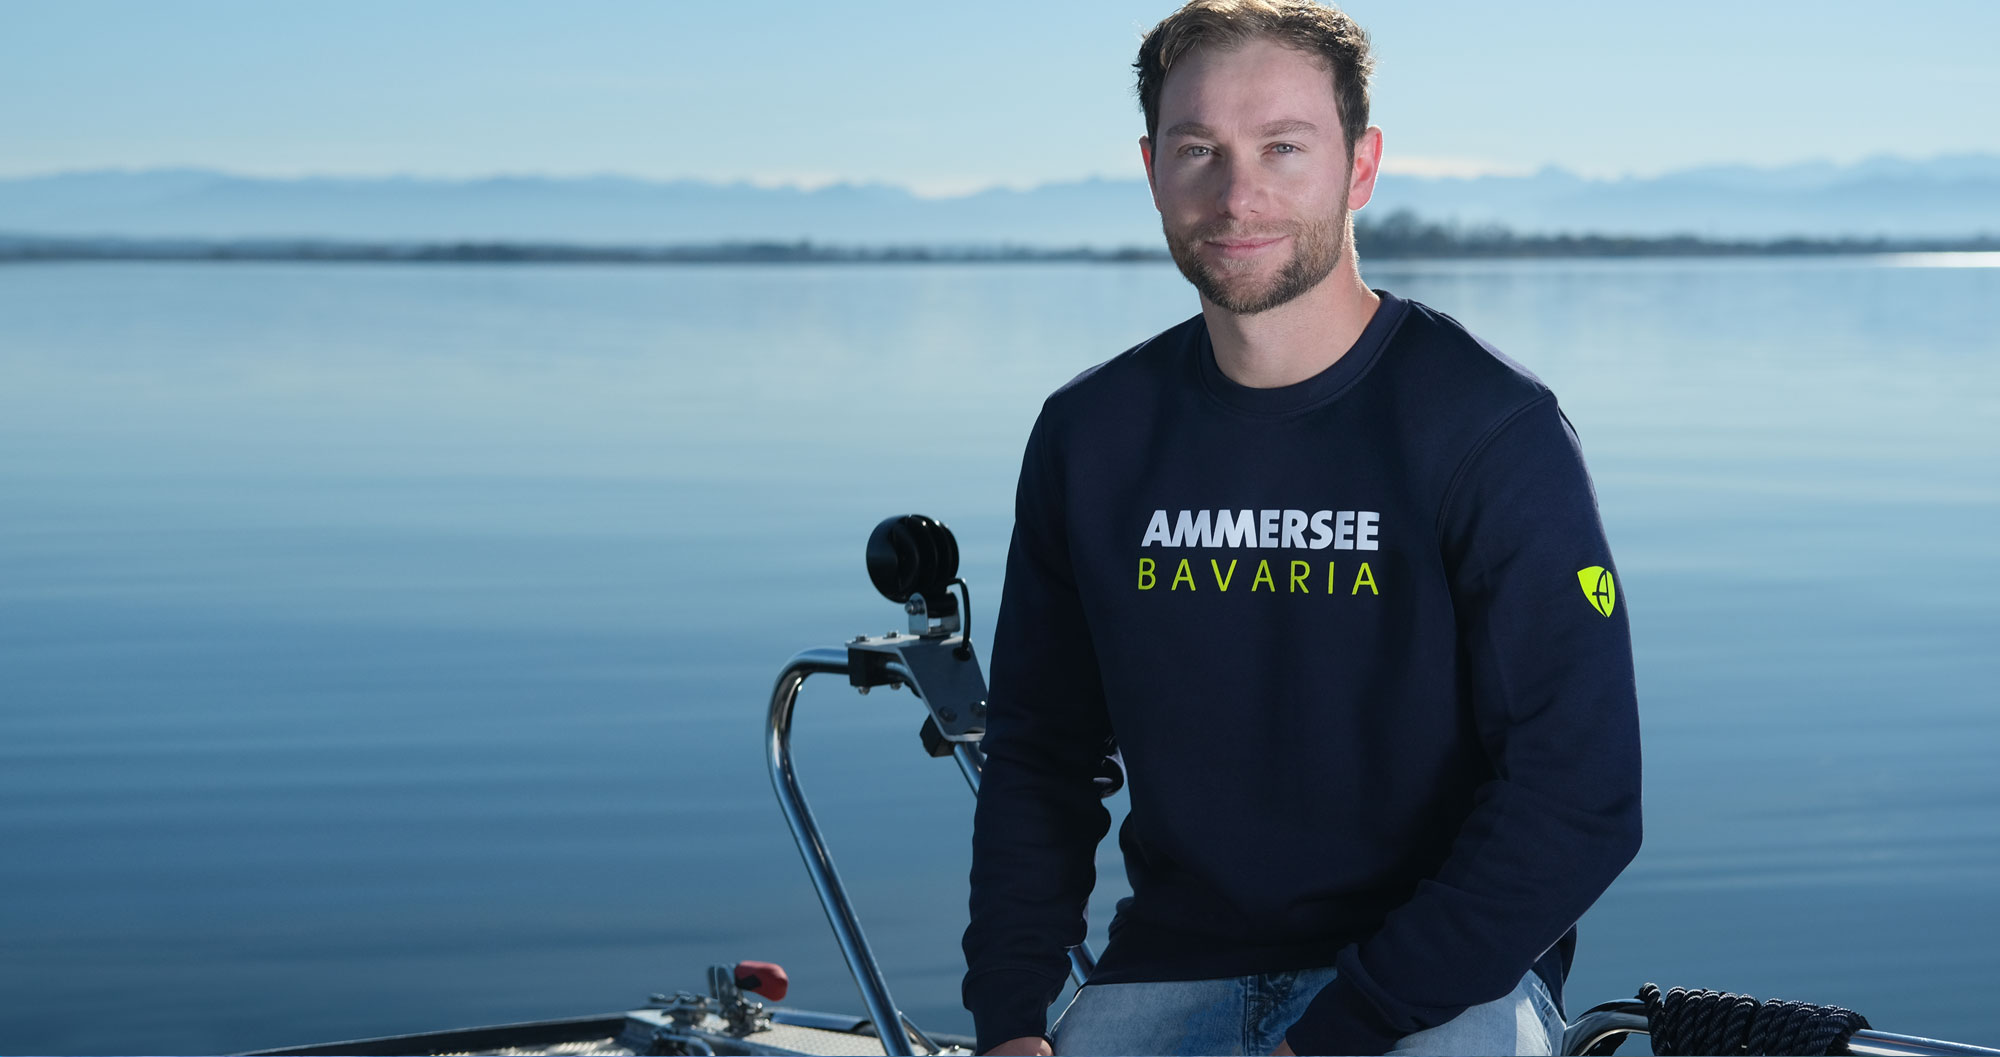 Männer Model auf Boot mit Ammersee Bavaria Sweatshirt